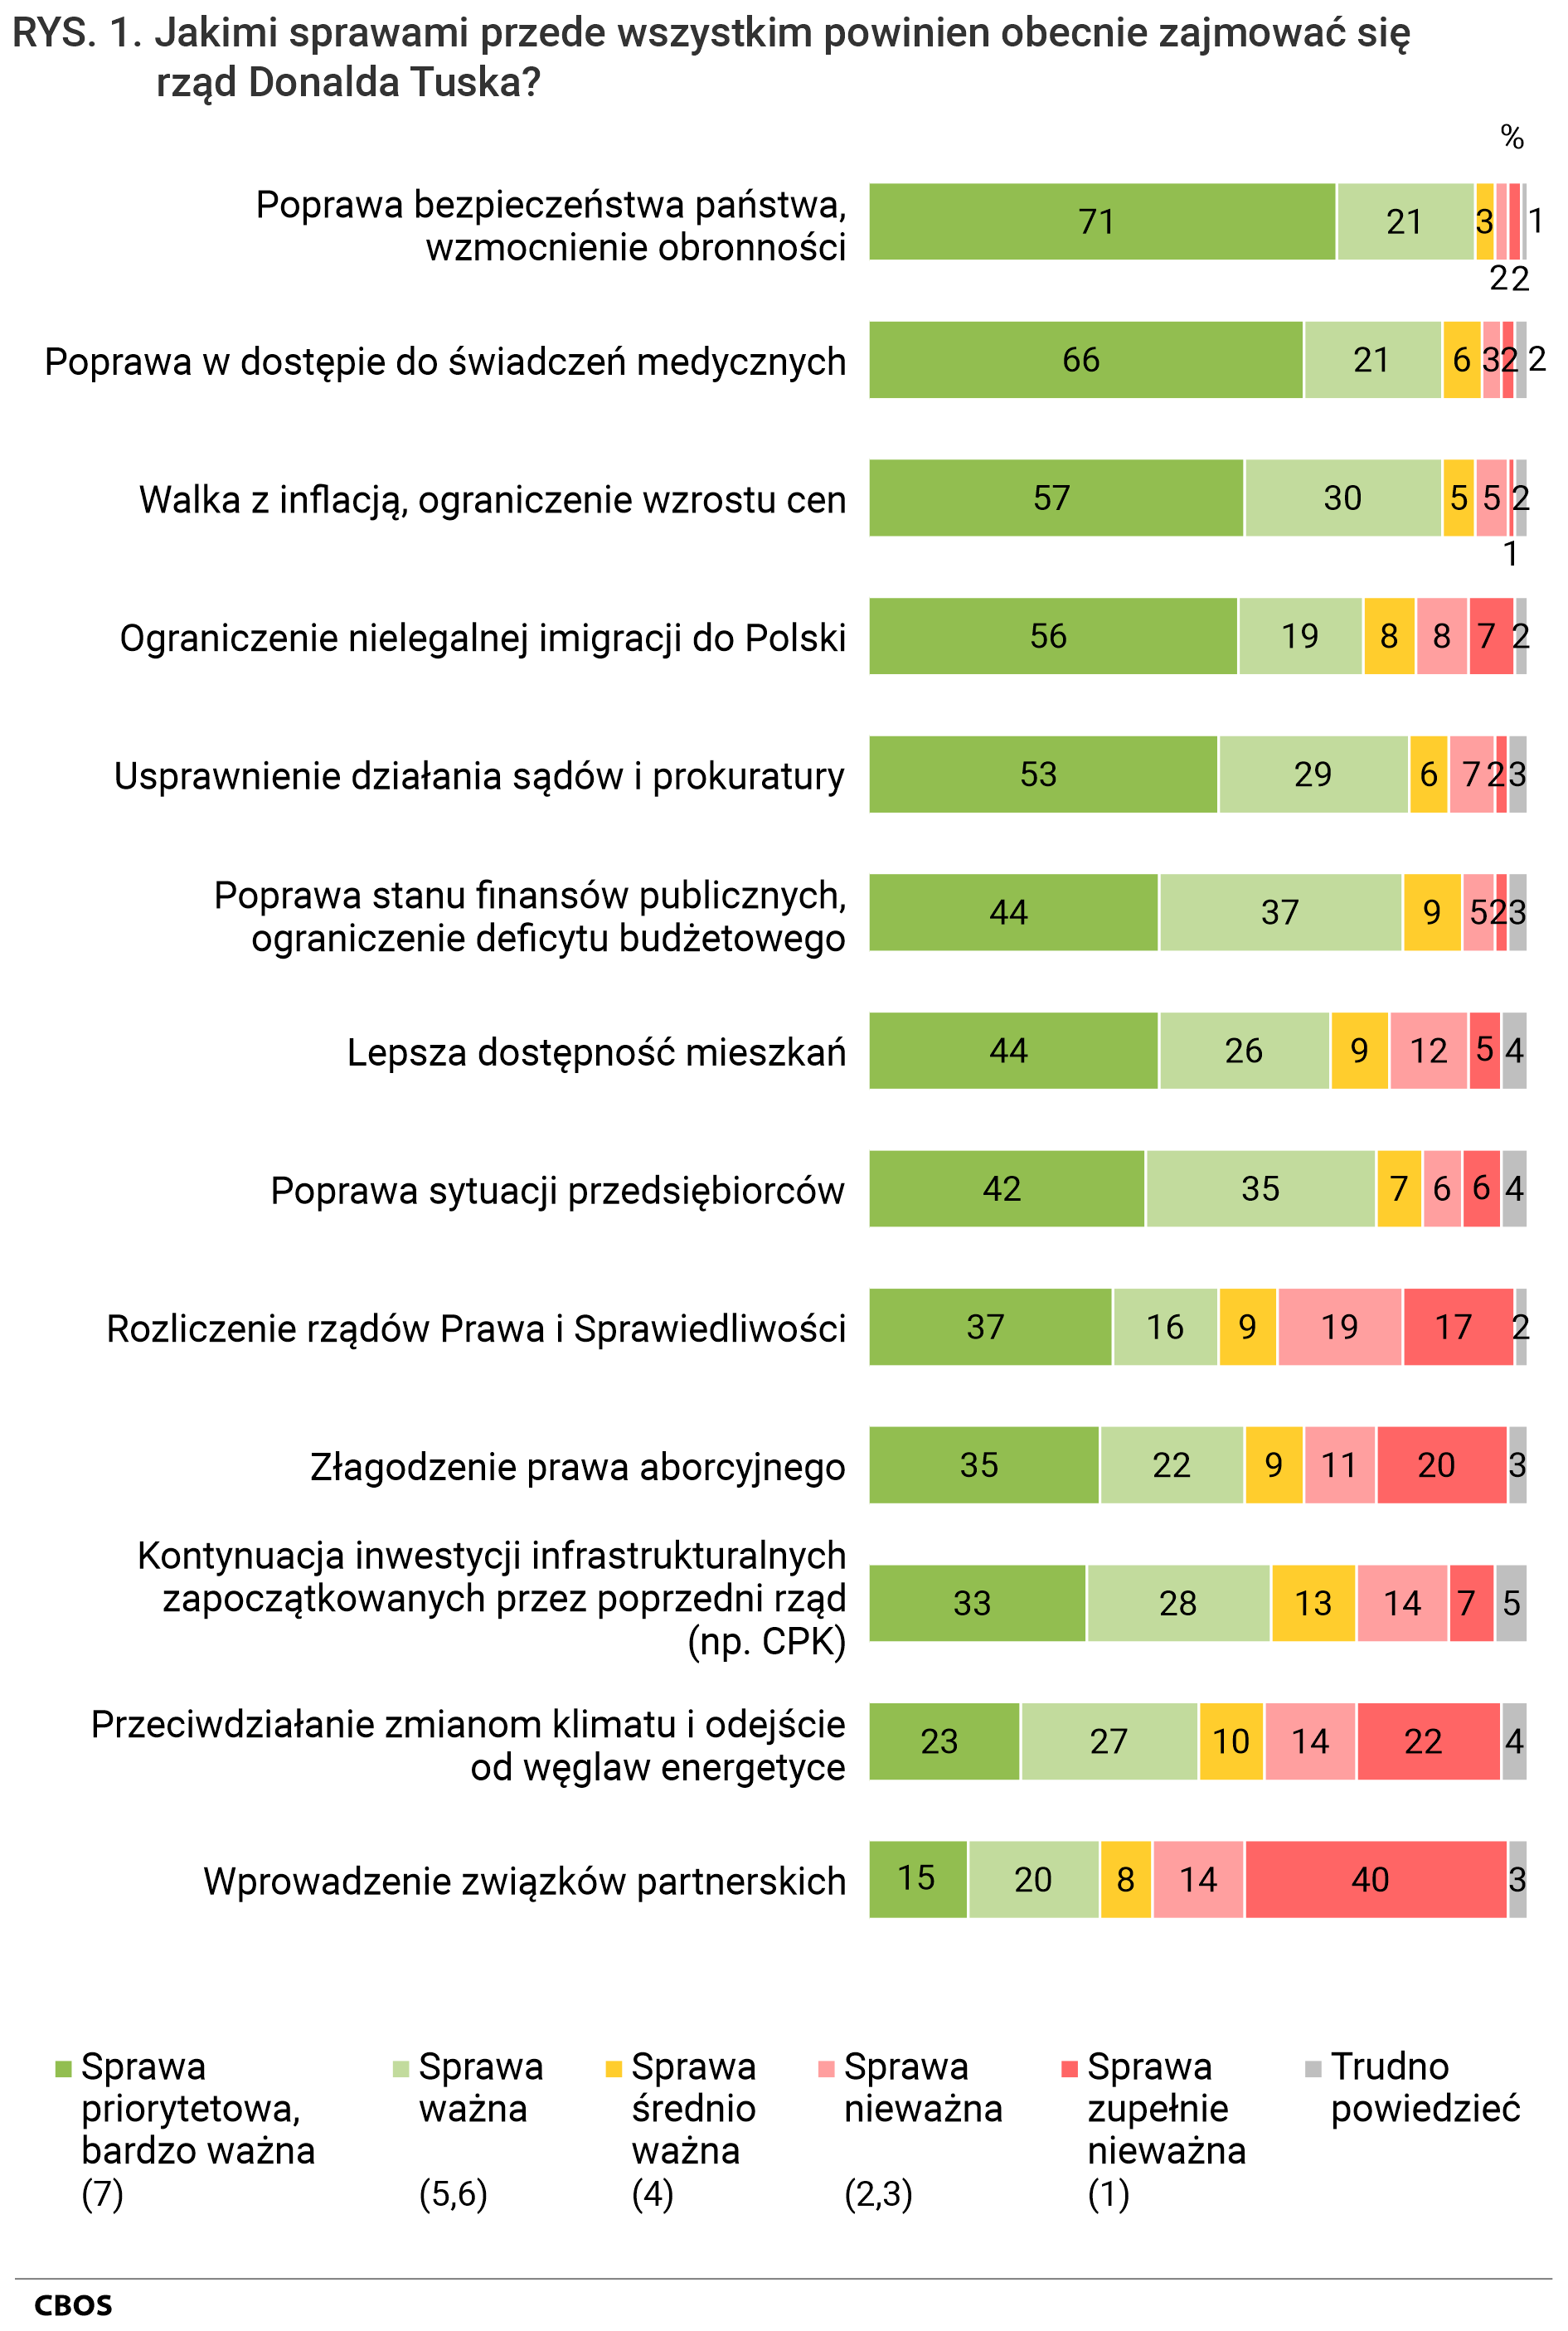 Rysunek 1. Jakimi sprawami przede wszystkim powinien obecnie zajmować się rząd Donalda Tuska? Poprawa bezpieczeństwa państwa, wzmocnienie obronności - Sprawa zupełnie nieważna (1) 2%; Sprawa nieważna (2,3) 2%; Sprawa średnio ważna (4) 3%; Sprawa ważna (5,6) 21%; Sprawa priorytetowa, bardzo ważna (7) 71%; Trudno powiedzieć 1%. Poprawa w dostępie do świadczeń medycznych - Sprawa zupełnie nieważna (1) 2%; Sprawa nieważna (2,3) 3%; Sprawa średnio ważna (4) 6%; Sprawa ważna (5,6) 21%; Sprawa priorytetowa, bardzo ważna (7) 66%; Trudno powiedzieć 2%. Walka z inflacją, ograniczenie wzrostu cen - Sprawa zupełnie nieważna (1) 1%; Sprawa nieważna (2,3) 5%; Sprawa średnio ważna (4) 5%; Sprawa ważna (5,6) 30%; Sprawa priorytetowa, bardzo ważna (7) 57%; Trudno powiedzieć 2%. Ograniczenie nielegalnej imigracji do Polski - Sprawa zupełnie nieważna (1) 7%; Sprawa nieważna (2,3) 8%; Sprawa średnio ważna (4) 8%; Sprawa ważna (5,6) 19%; Sprawa priorytetowa, bardzo ważna (7) 56%; Trudno powiedzieć 2%. Usprawnienie działania sądów i prokuratury - Sprawa zupełnie nieważna (1) 2%; Sprawa nieważna (2,3) 7%; Sprawa średnio ważna (4) 6%; Sprawa ważna (5,6) 29%; Sprawa priorytetowa, bardzo ważna (7) 53%; Trudno powiedzieć 3%. Poprawa stanu finansów publicznych, ograniczenie deficytu budżetowego - Sprawa zupełnie nieważna (1) 2%; Sprawa nieważna (2,3) 5%; Sprawa średnio ważna (4) 9%; Sprawa ważna (5,6) 37%; Sprawa priorytetowa, bardzo ważna (7) 44%; Trudno powiedzieć 3%. Lepsza dostępność mieszkań - Sprawa zupełnie nieważna (1) 5%; Sprawa nieważna (2,3) 12%; Sprawa średnio ważna (4) 9%; Sprawa ważna (5,6) 26%; Sprawa priorytetowa, bardzo ważna (7) 44%; Trudno powiedzieć 4%. Poprawa sytuacji przedsiębiorców - Sprawa zupełnie nieważna (1) 6%; Sprawa nieważna (2,3) 6%; Sprawa średnio ważna (4) 7%; Sprawa ważna (5,6) 35%; Sprawa priorytetowa, bardzo ważna (7) 42%; Trudno powiedzieć 4%. Rozliczenie rządów Prawa i Sprawiedliwości - Sprawa zupełnie nieważna (1) 17%; Sprawa nieważna (2,3) 19%; Sprawa średnio ważna (4) 9%; Sprawa ważna (5,6) 16%; Sprawa priorytetowa, bardzo ważna (7) 37%; Trudno powiedzieć 2%. Złagodzenie prawa aborcyjnego - Sprawa zupełnie nieważna (1) 20%; Sprawa nieważna (2,3) 11%; Sprawa średnio ważna (4) 9%; Sprawa ważna (5,6) 22%; Sprawa priorytetowa, bardzo ważna (7) 35%; Trudno powiedzieć 3%. Kontynuacja inwestycji infrastrukturalnych zapoczątkowanych przez poprzedni rząd (np. CPK) - Sprawa zupełnie nieważna (1) 7%; Sprawa nieważna (2,3) 14%; Sprawa średnio ważna (4) 13%; Sprawa ważna (5,6) 28%; Sprawa priorytetowa, bardzo ważna (7) 33%; Trudno powiedzieć 5%. Przeciwdziałanie zmianom klimatu i odejście od węgla w energetyce - Sprawa zupełnie nieważna (1) 22%; Sprawa nieważna (2,3) 14%; Sprawa średnio ważna (4) 10%; Sprawa ważna (5,6) 27%; Sprawa priorytetowa, bardzo ważna (7) 23%; Trudno powiedzieć 4%. Wprowadzenie związków partnerskich - Sprawa zupełnie nieważna (1) 40%; Sprawa nieważna (2,3) 14%; Sprawa średnio ważna (4) 8%; Sprawa ważna (5,6) 20%; Sprawa priorytetowa, bardzo ważna (7) 15%; Trudno powiedzieć 3%.